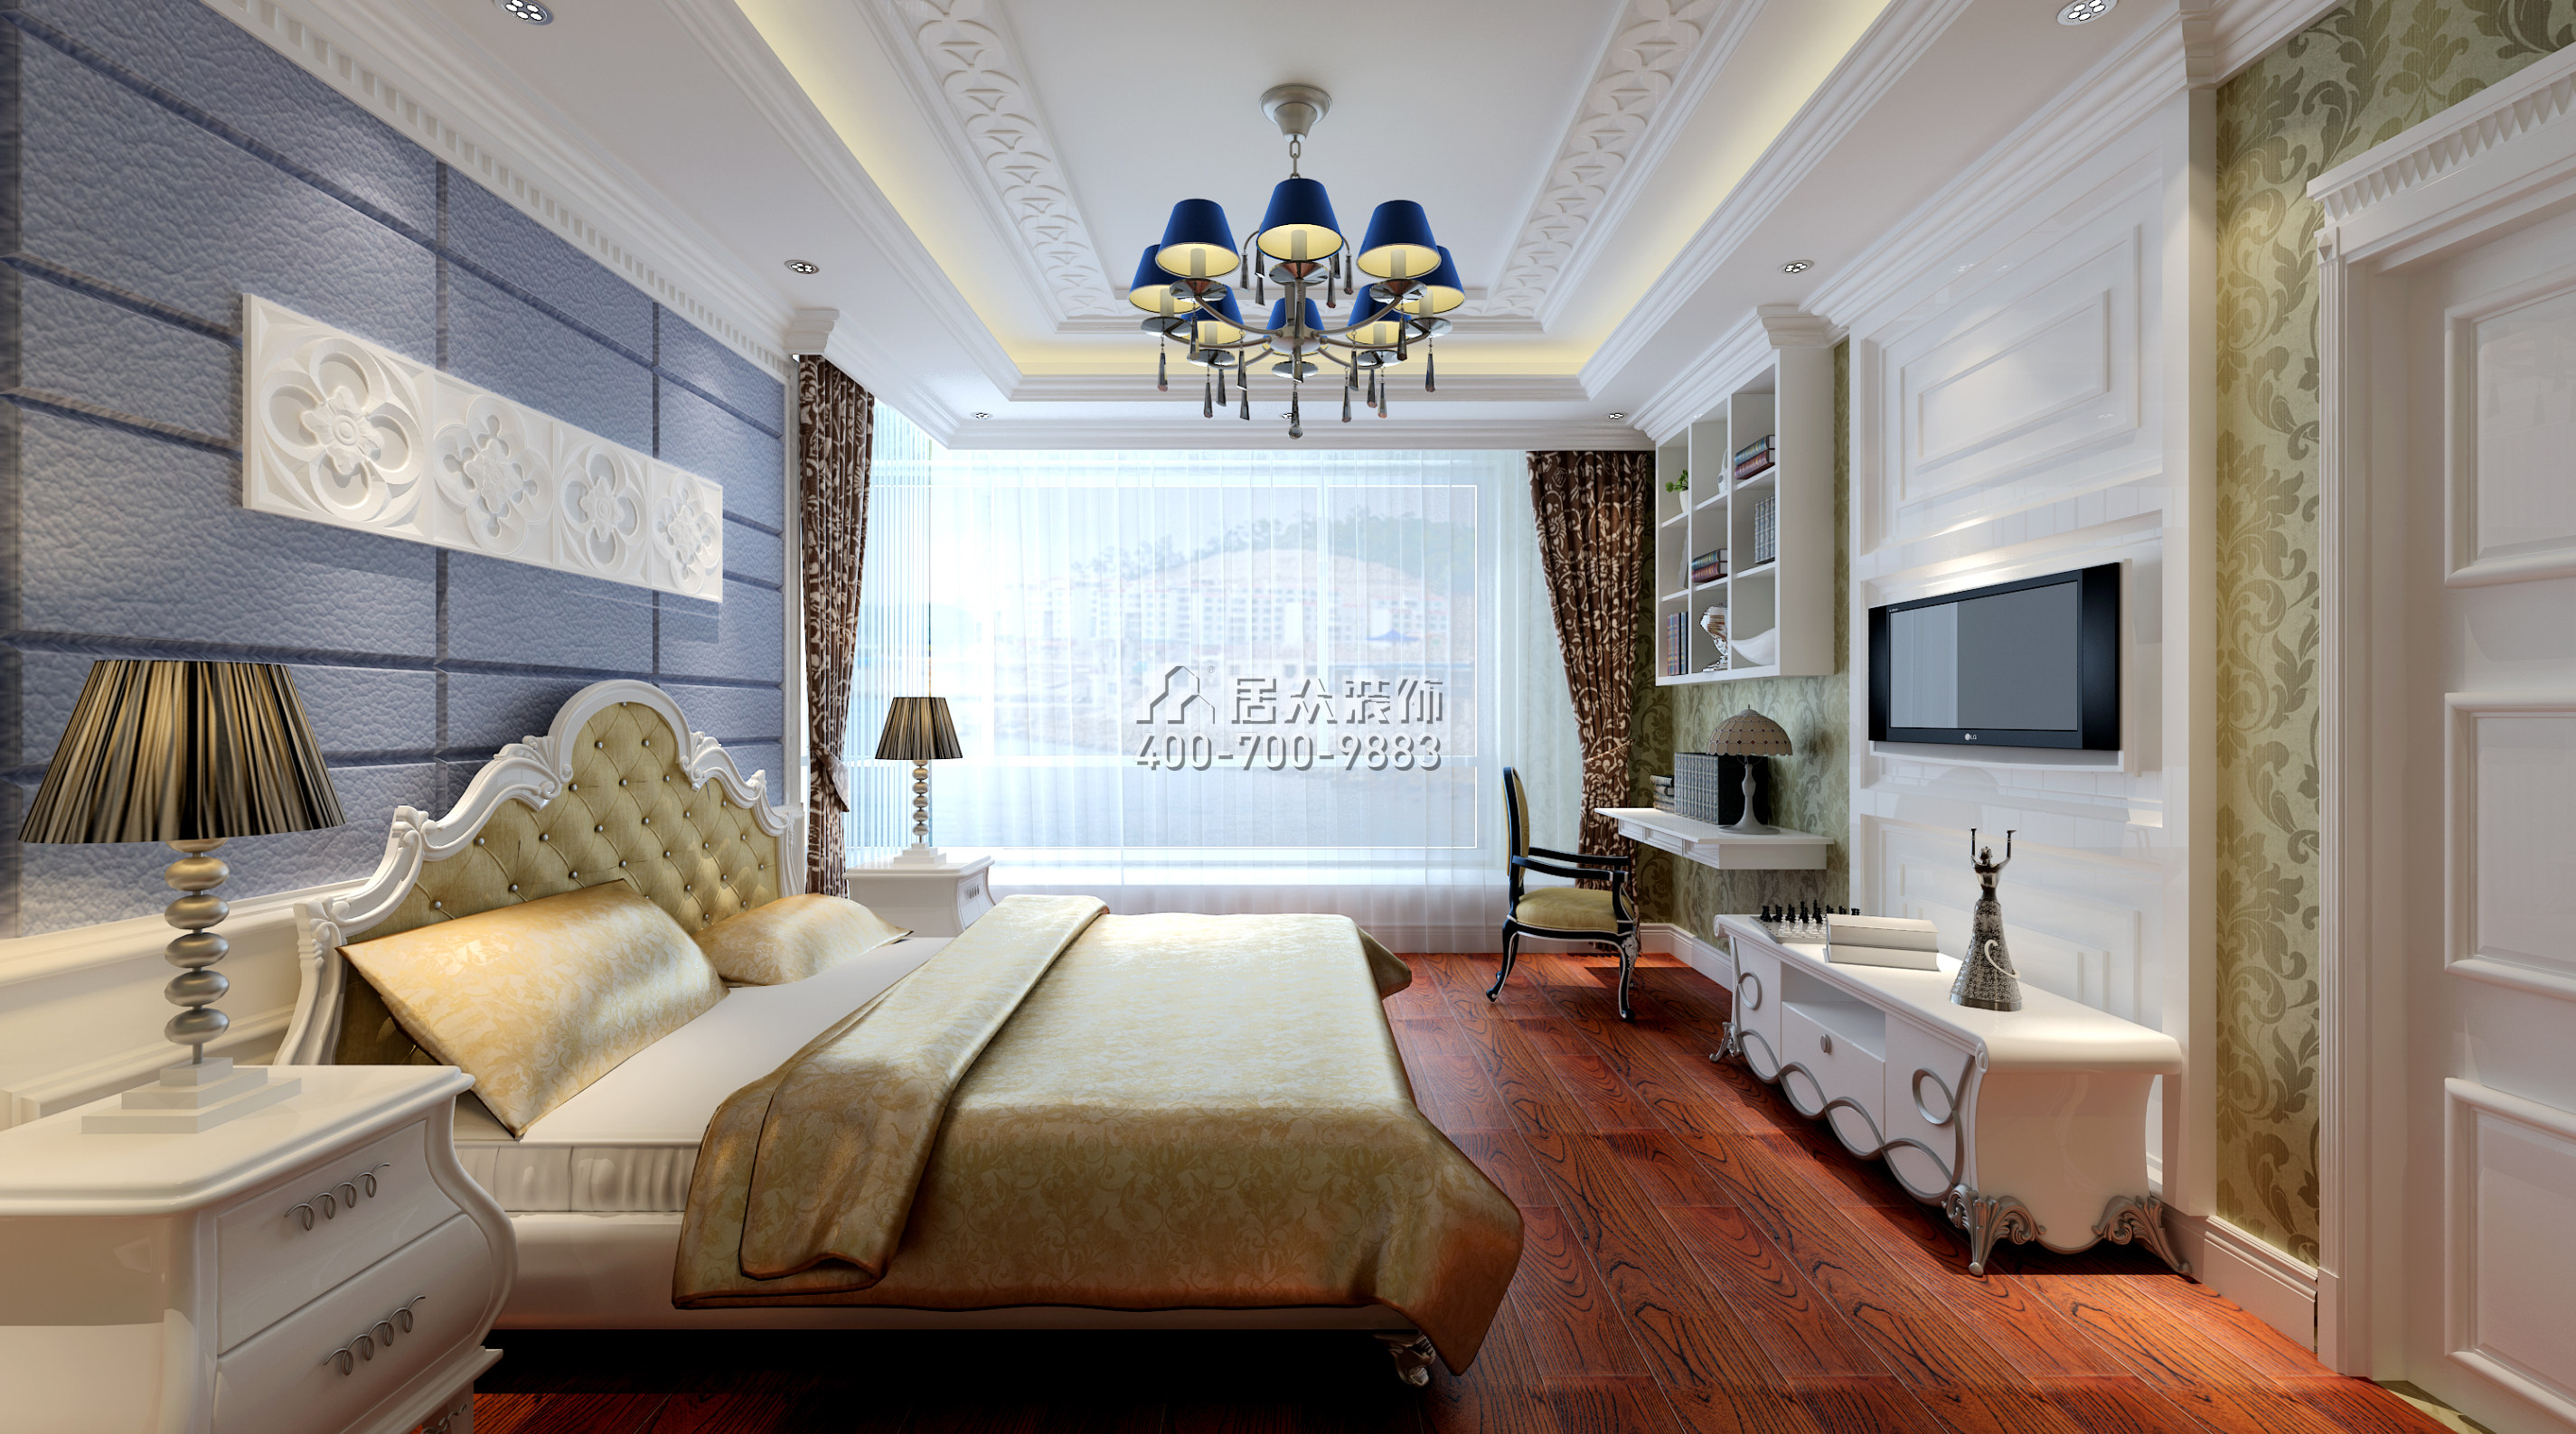 国贸天琴湾180平方米新古典风格平层户型卧室装修效果图